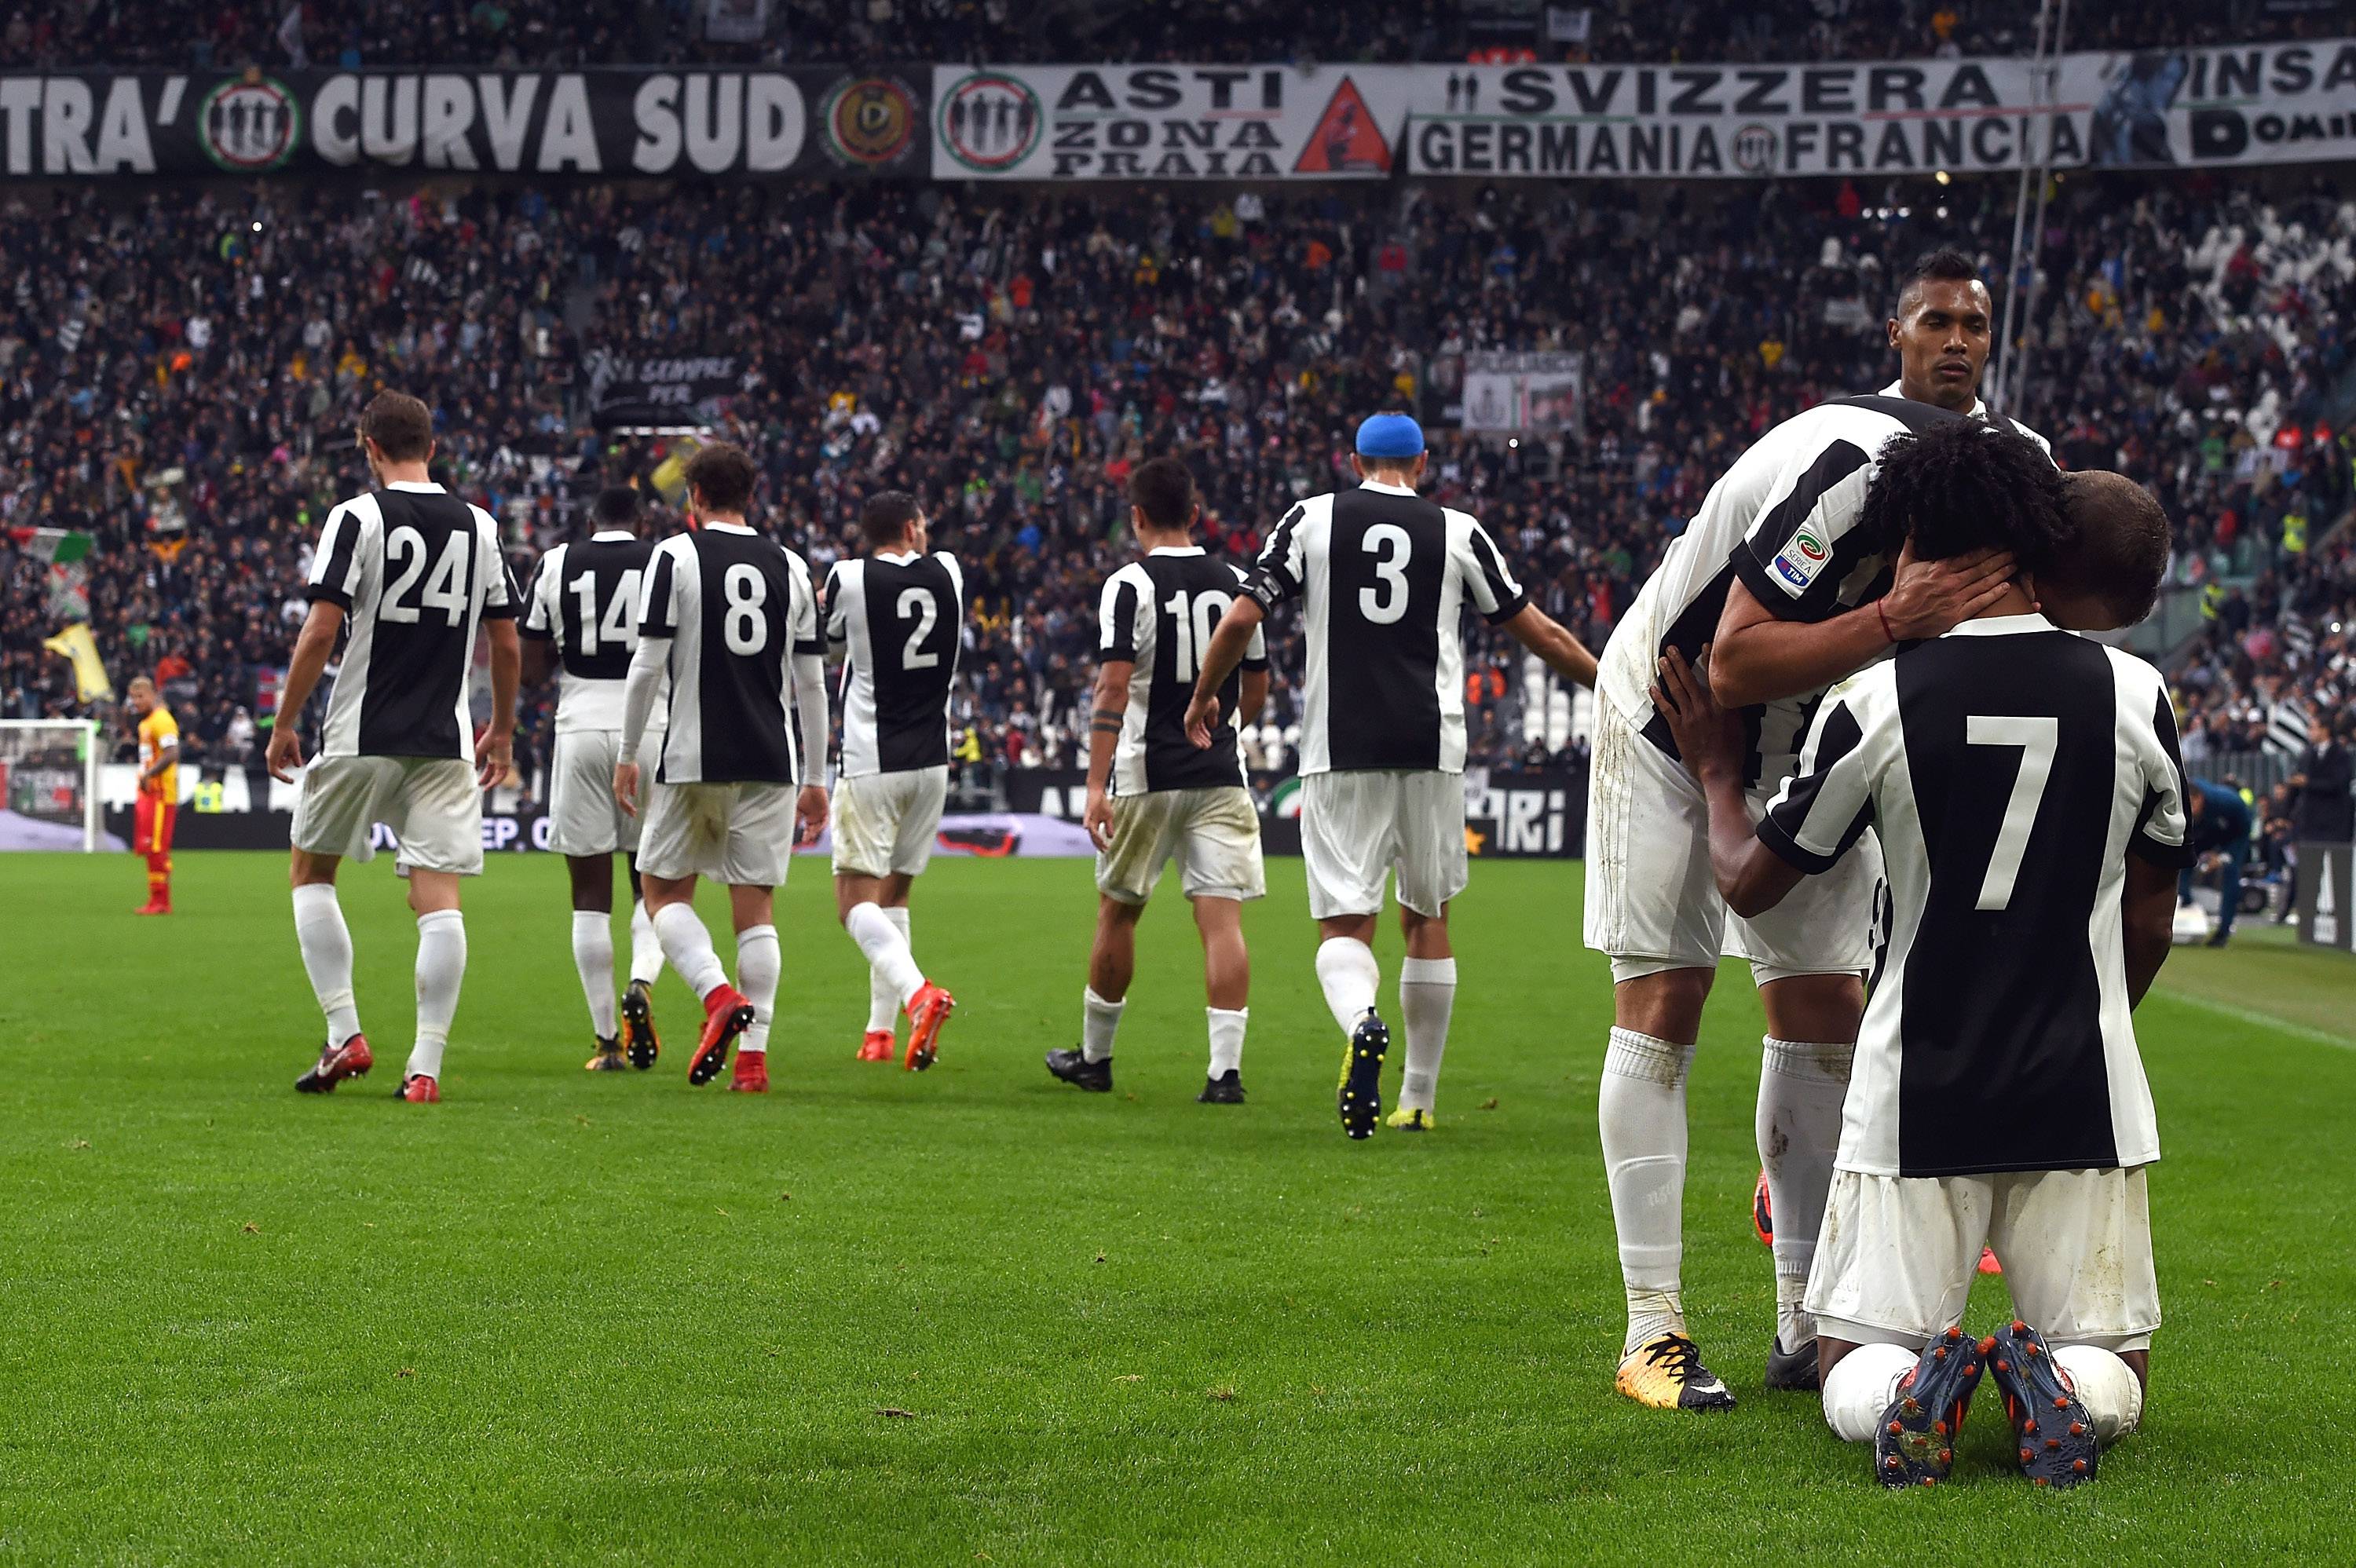 Esultanza Juventus